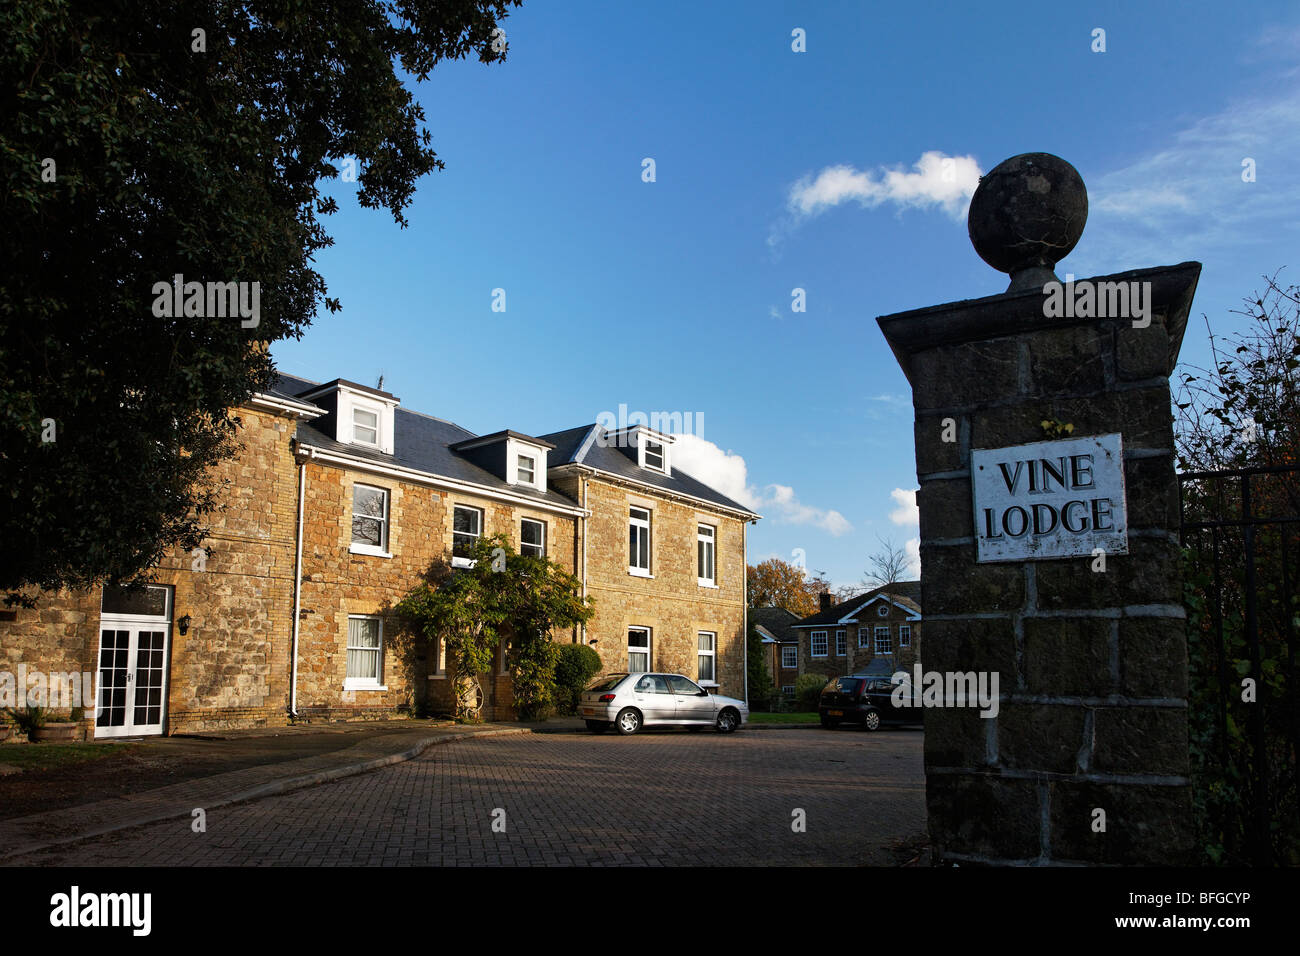 Vine lodge housing estate, Sevenoaks Stock Photo